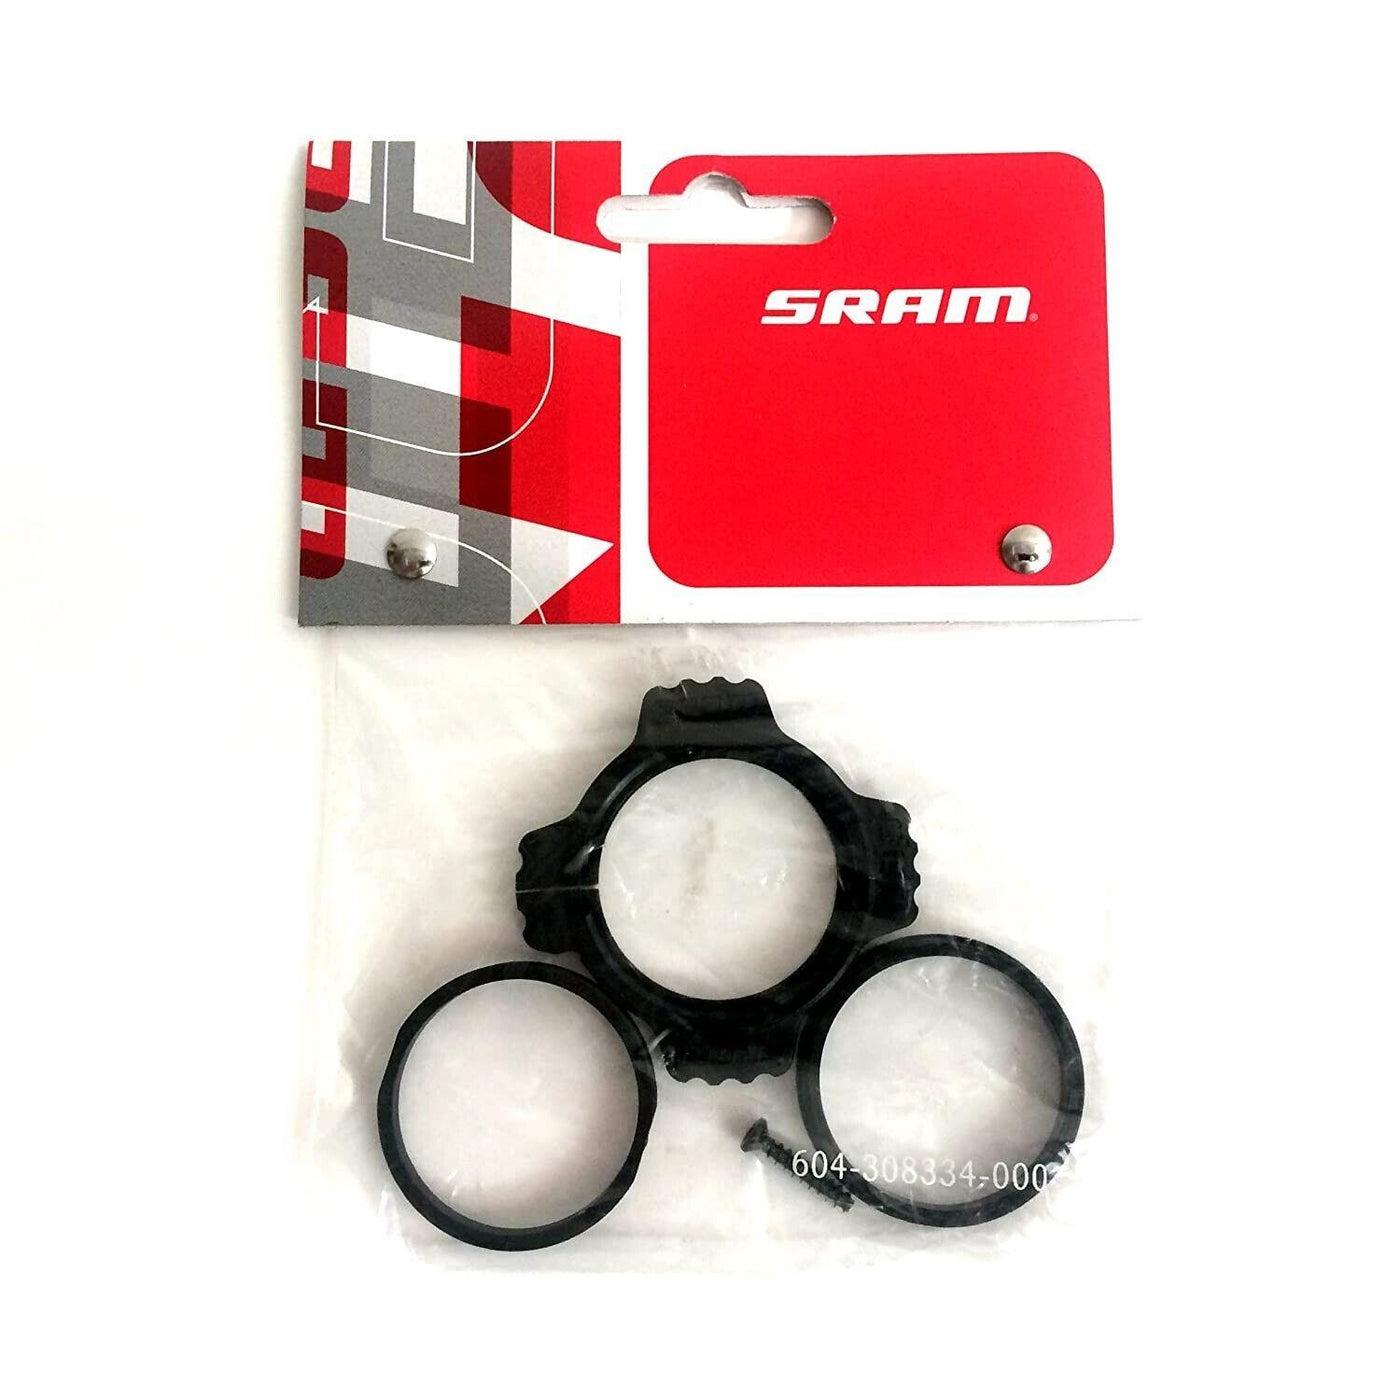 SRAM DUB Bottom Bracket Preload Adjuster Kit with Outer & Inner Rings